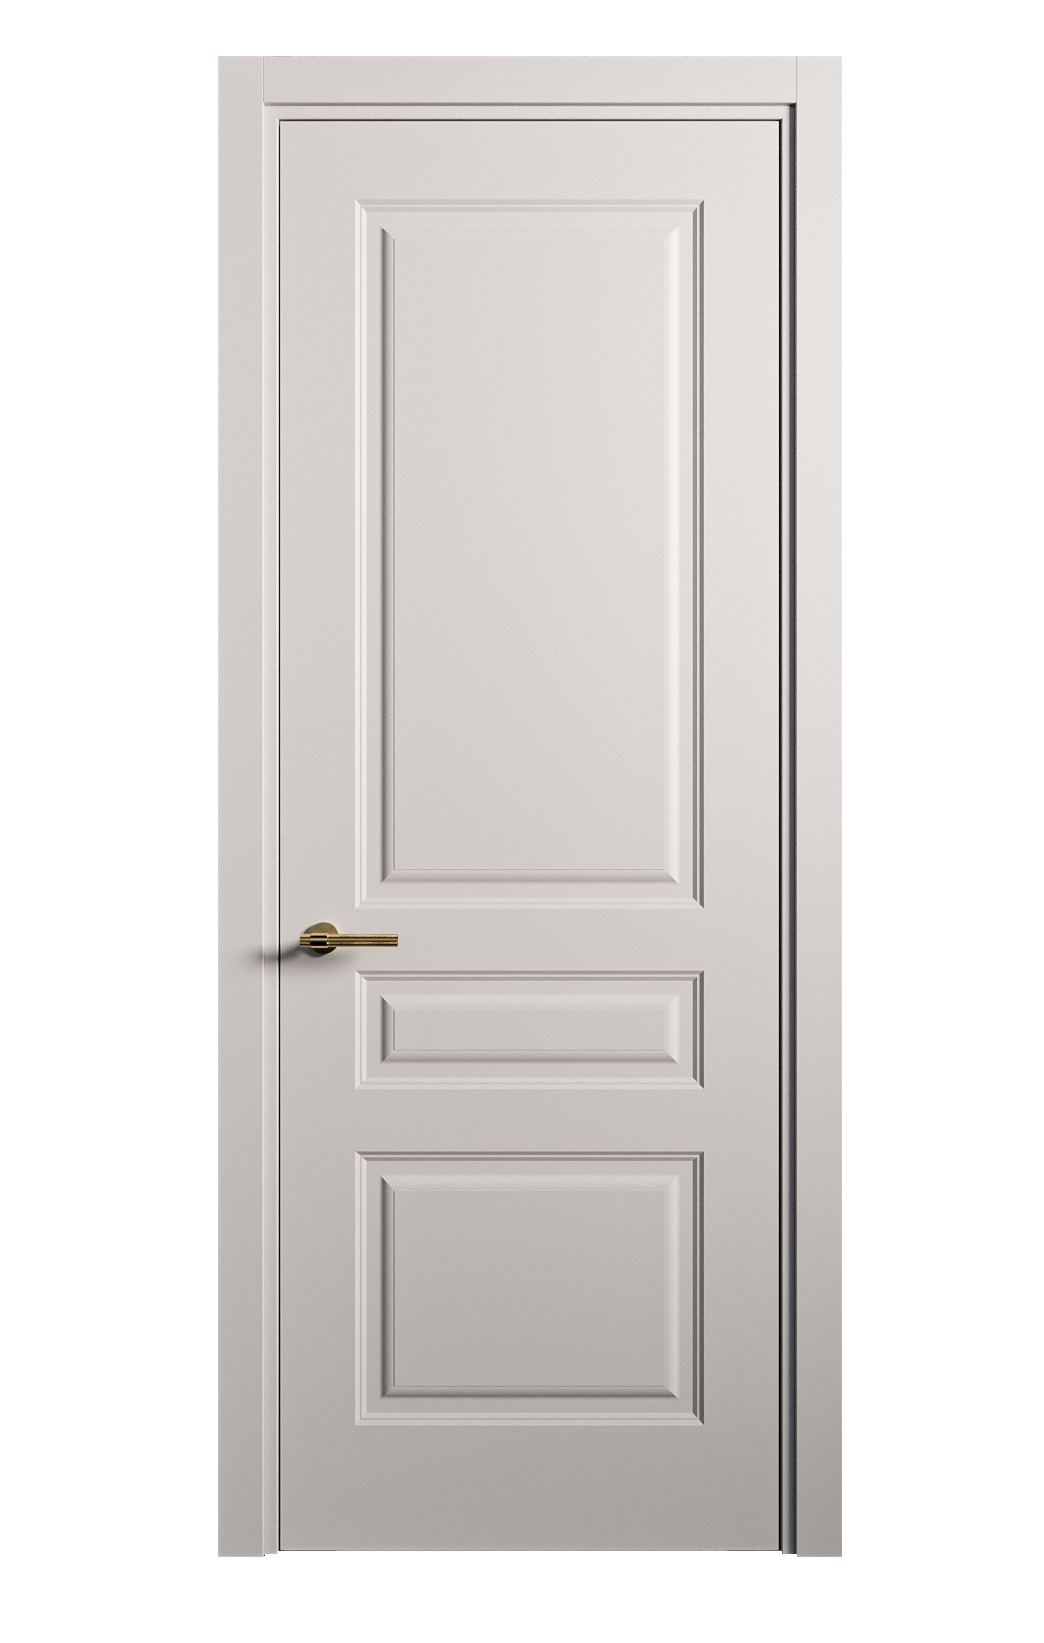 Межкомнатная дверь Вита-2 глухая эмаль ral 7047 26380